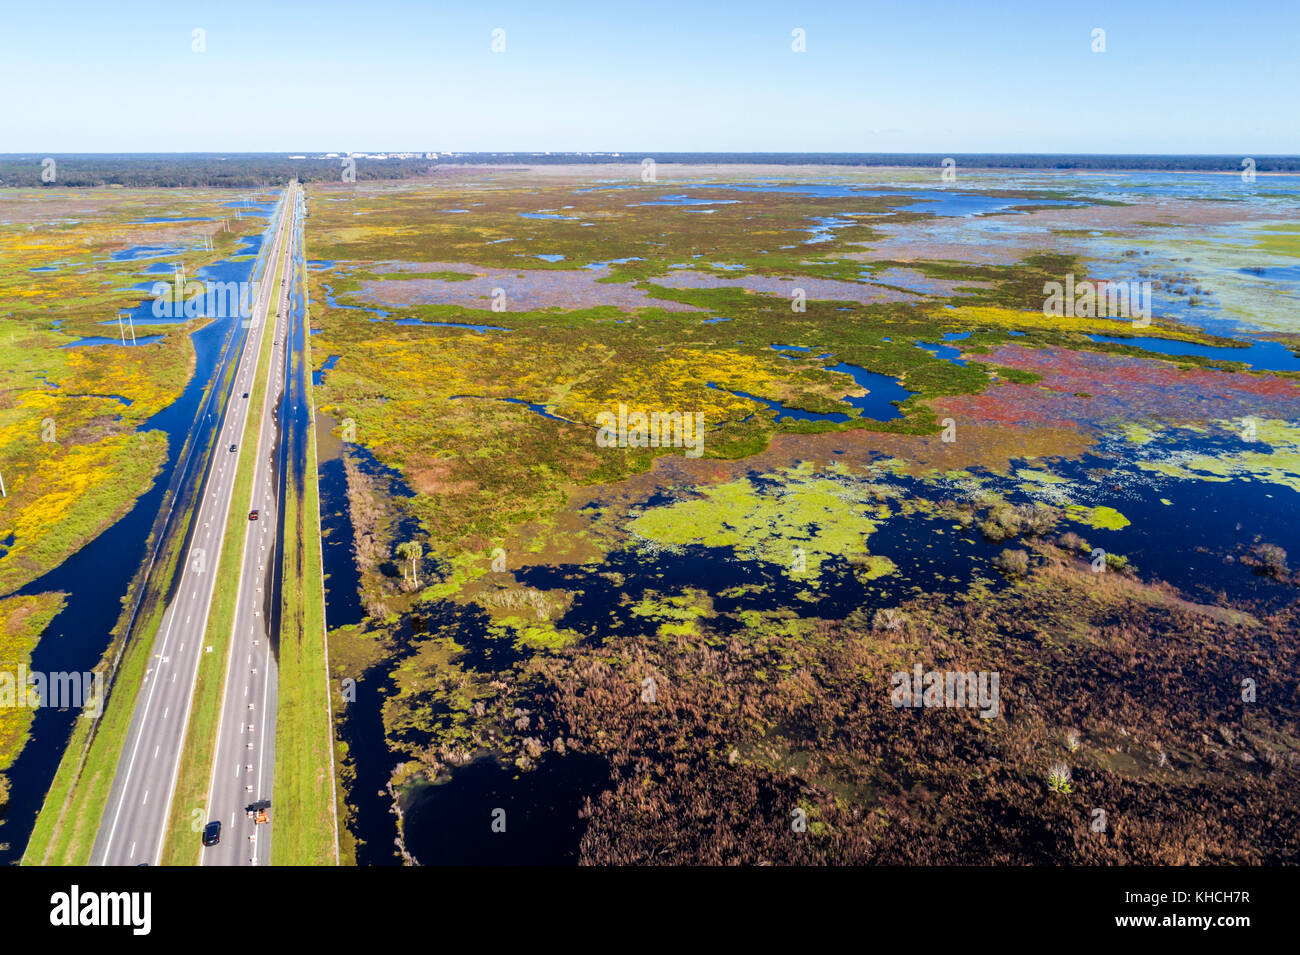 Gainesville Florida, Payne's Preparie Preserve State Park, Savannenbecken, Süßwasser-Sumpf, Route 441 Highway, Luftaufnahme von oben, USA, Vereinigte Staaten von Amerika Stockfoto